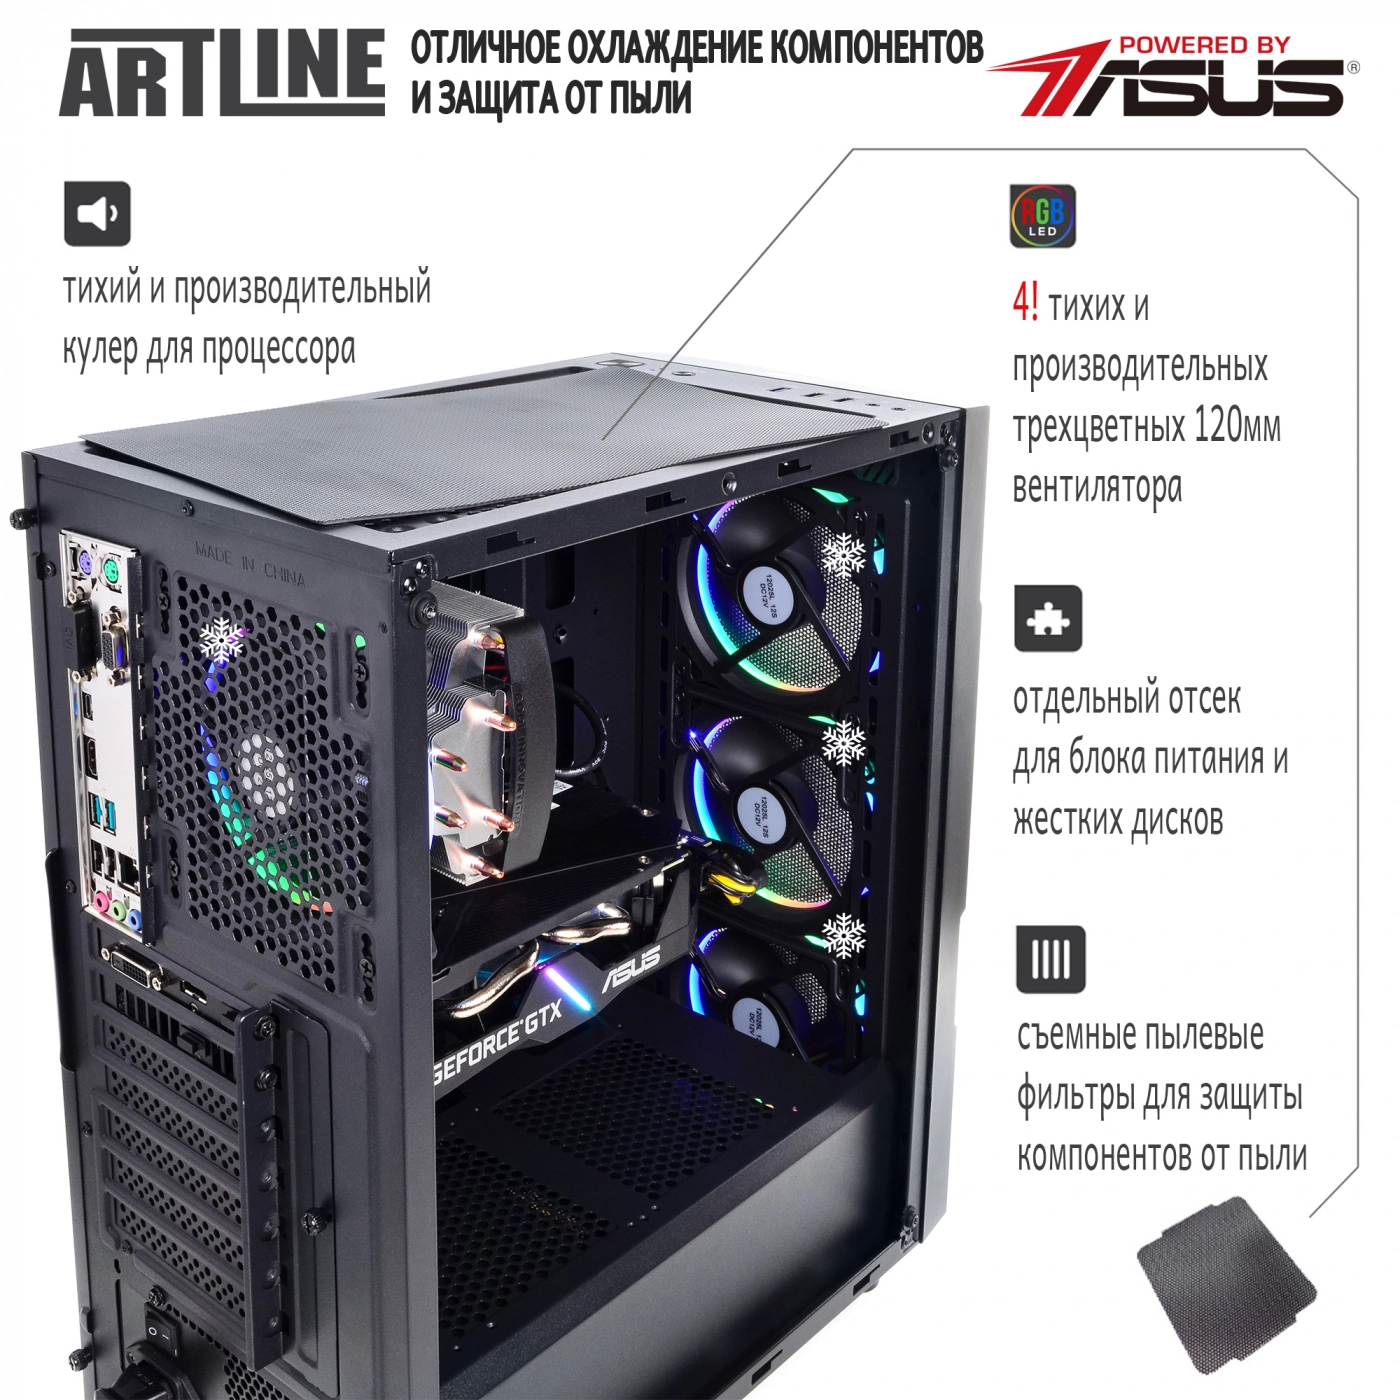 Купить Компьютер ARTLINE Gaming X44v18 - фото 2